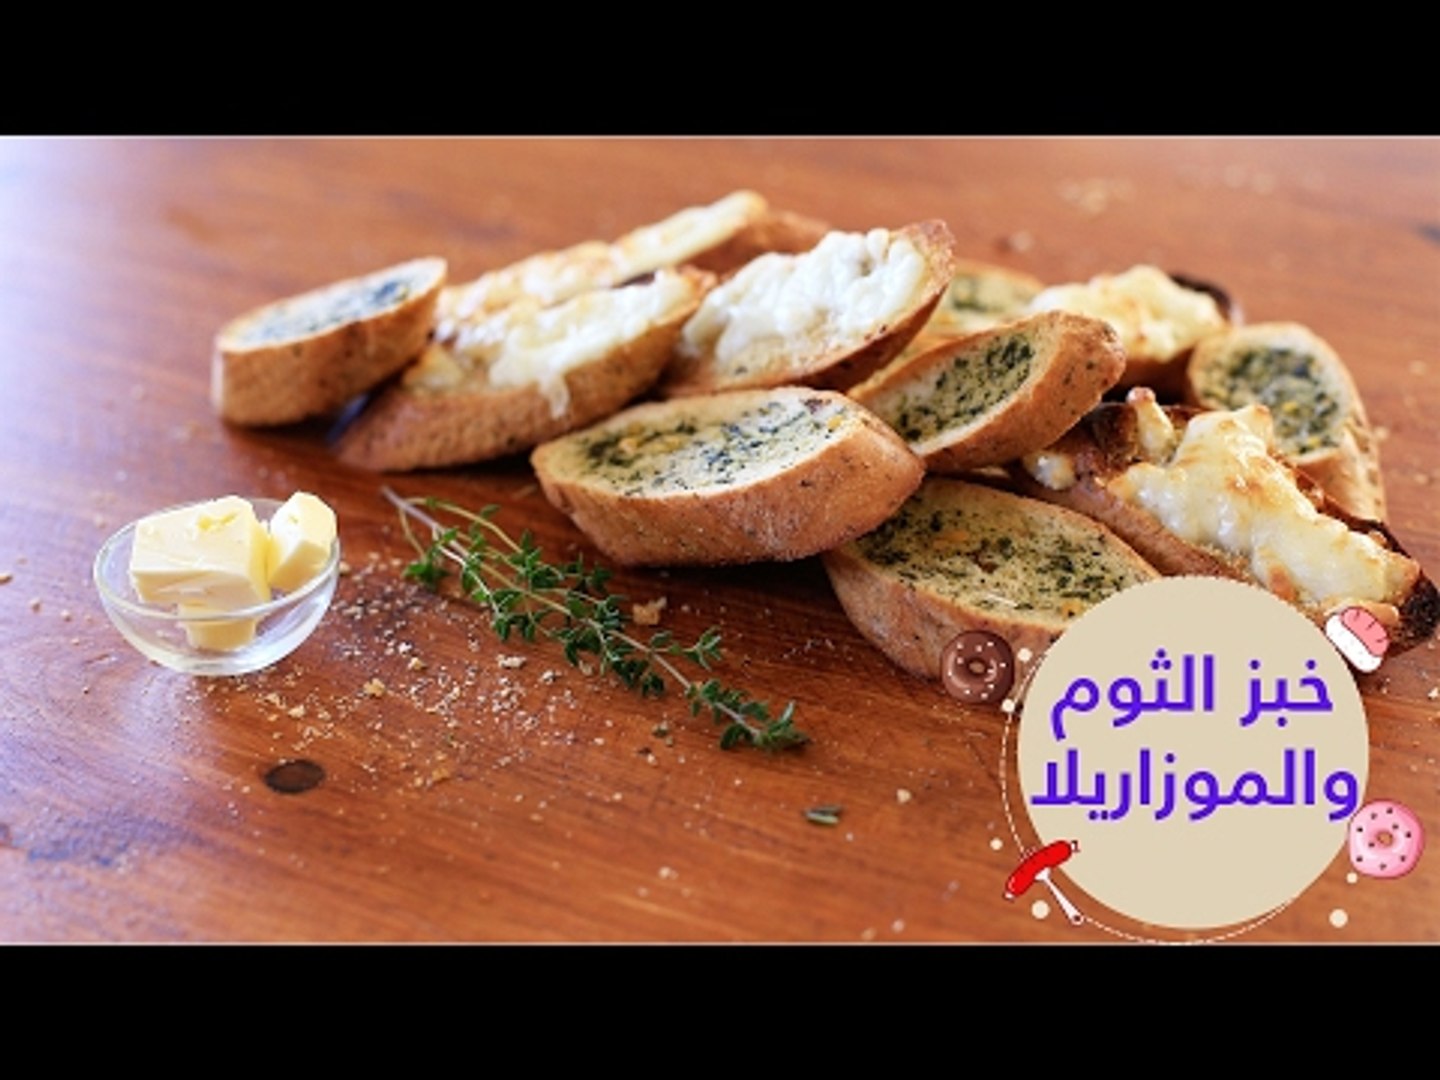 غيم رصين قرد  أسهل طريقة لعمل خبز الثوم والموتزاريلا على طريقة بيتزا هت | cheese garlic  bread recipe - فيديو Dailymotion